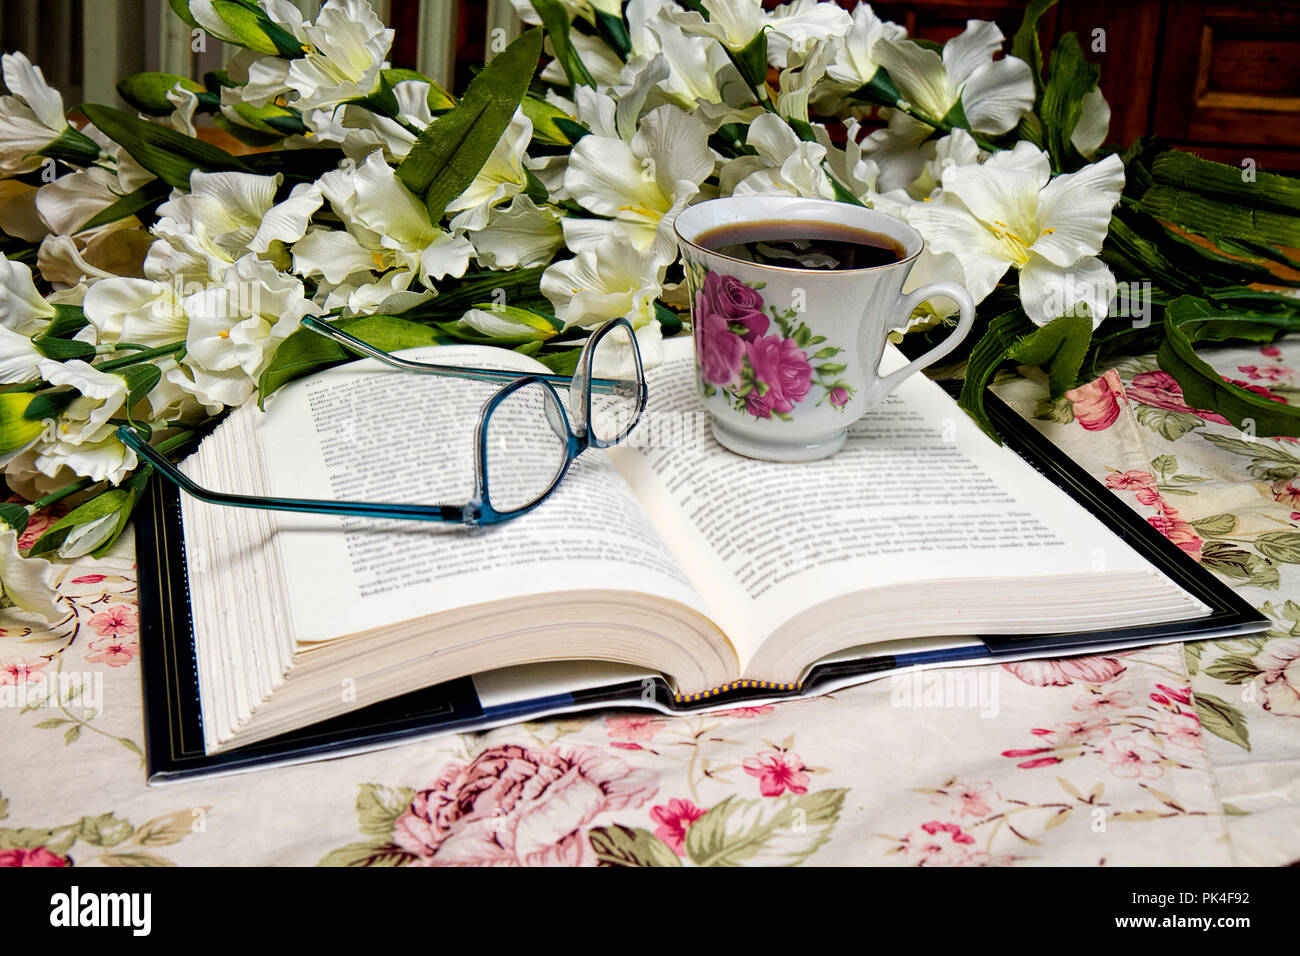 Livre ouvert avec paire de lunettes et une tasse de café assis à côté d'elle pendant la lecture. Bouquet de fleurs dans l'image. Banque D'Images